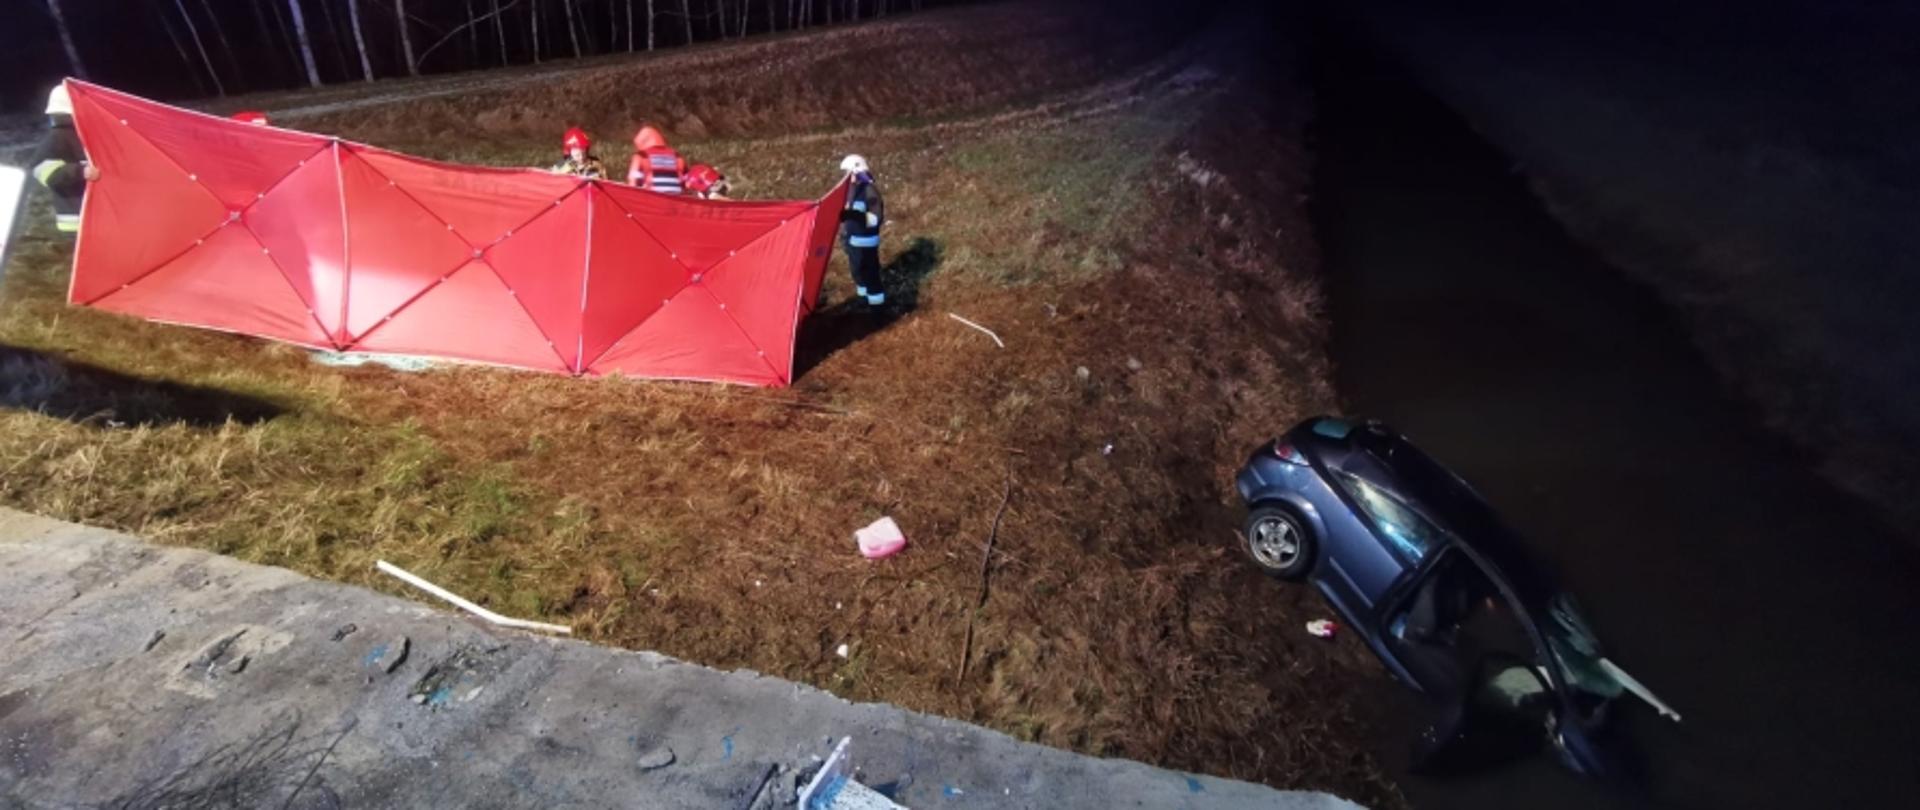 Zdjęcie zrobione o zmroku. Po prawej stronie fotografii widoczny samochód osobowy koloru granatowego częściowo zanurzony w kanale z wodą. Po lewej stronie zdjęcia rozstawiony czerwony parawan, za którym widać strażaków i personel ZRM.